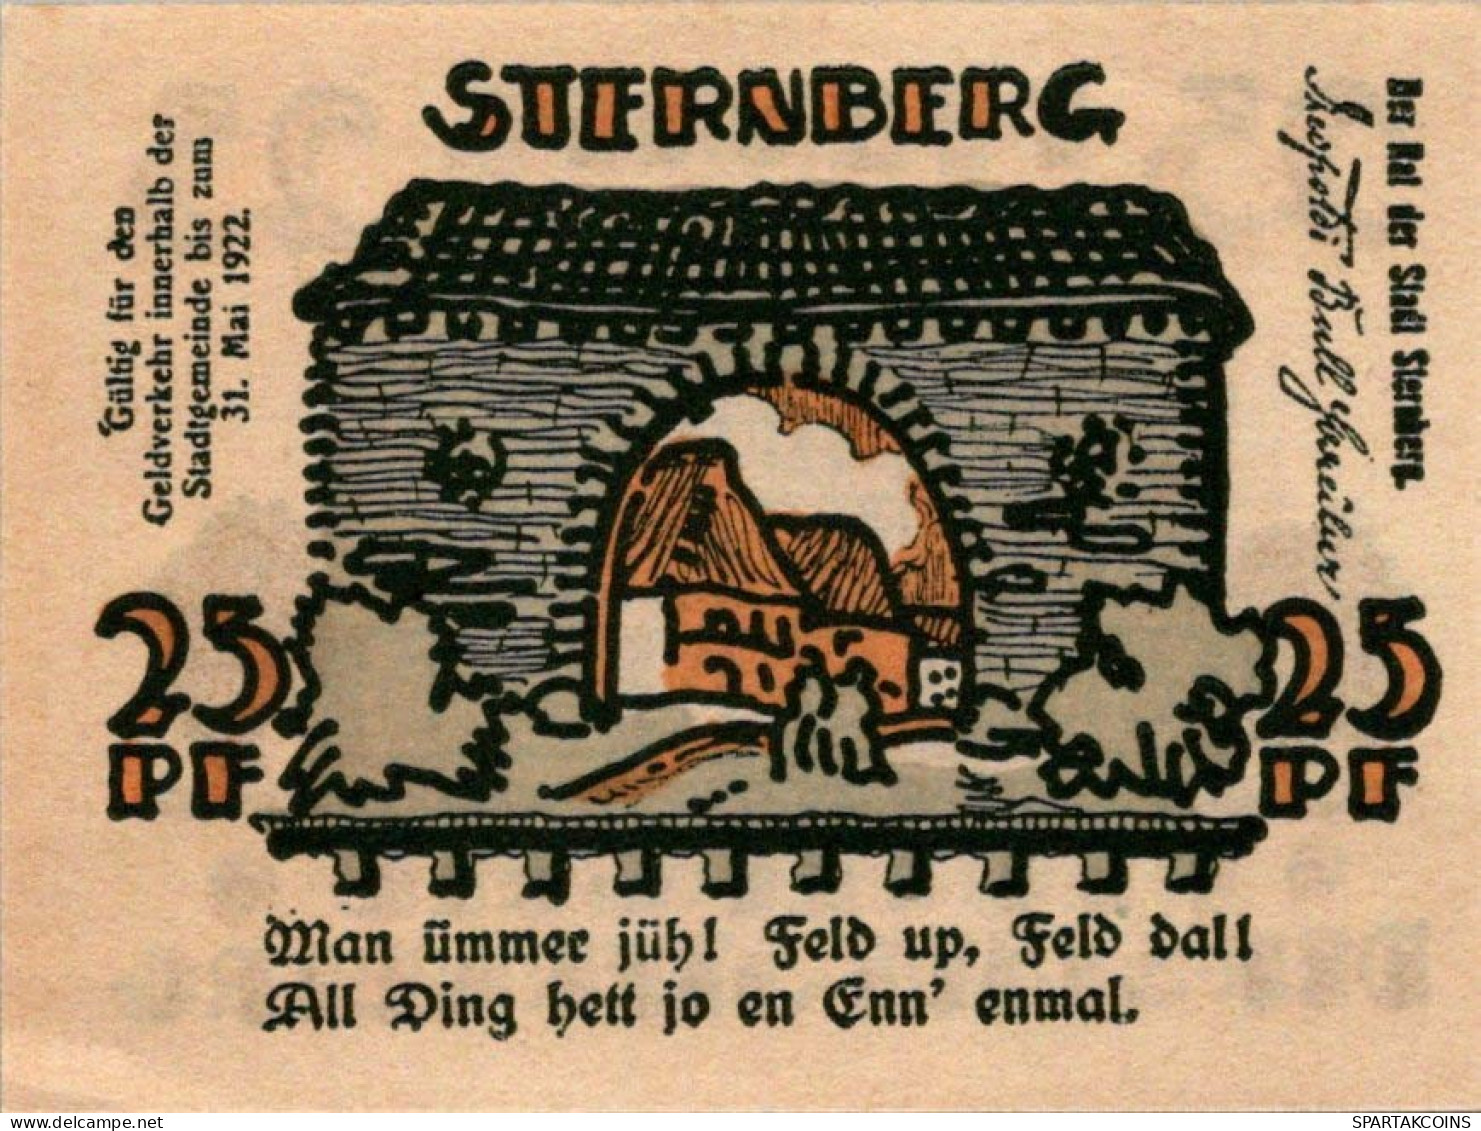 25 PFENNIG 1922 Stadt STERNBERG Mecklenburg-Schwerin UNC DEUTSCHLAND #PH331 - [11] Local Banknote Issues